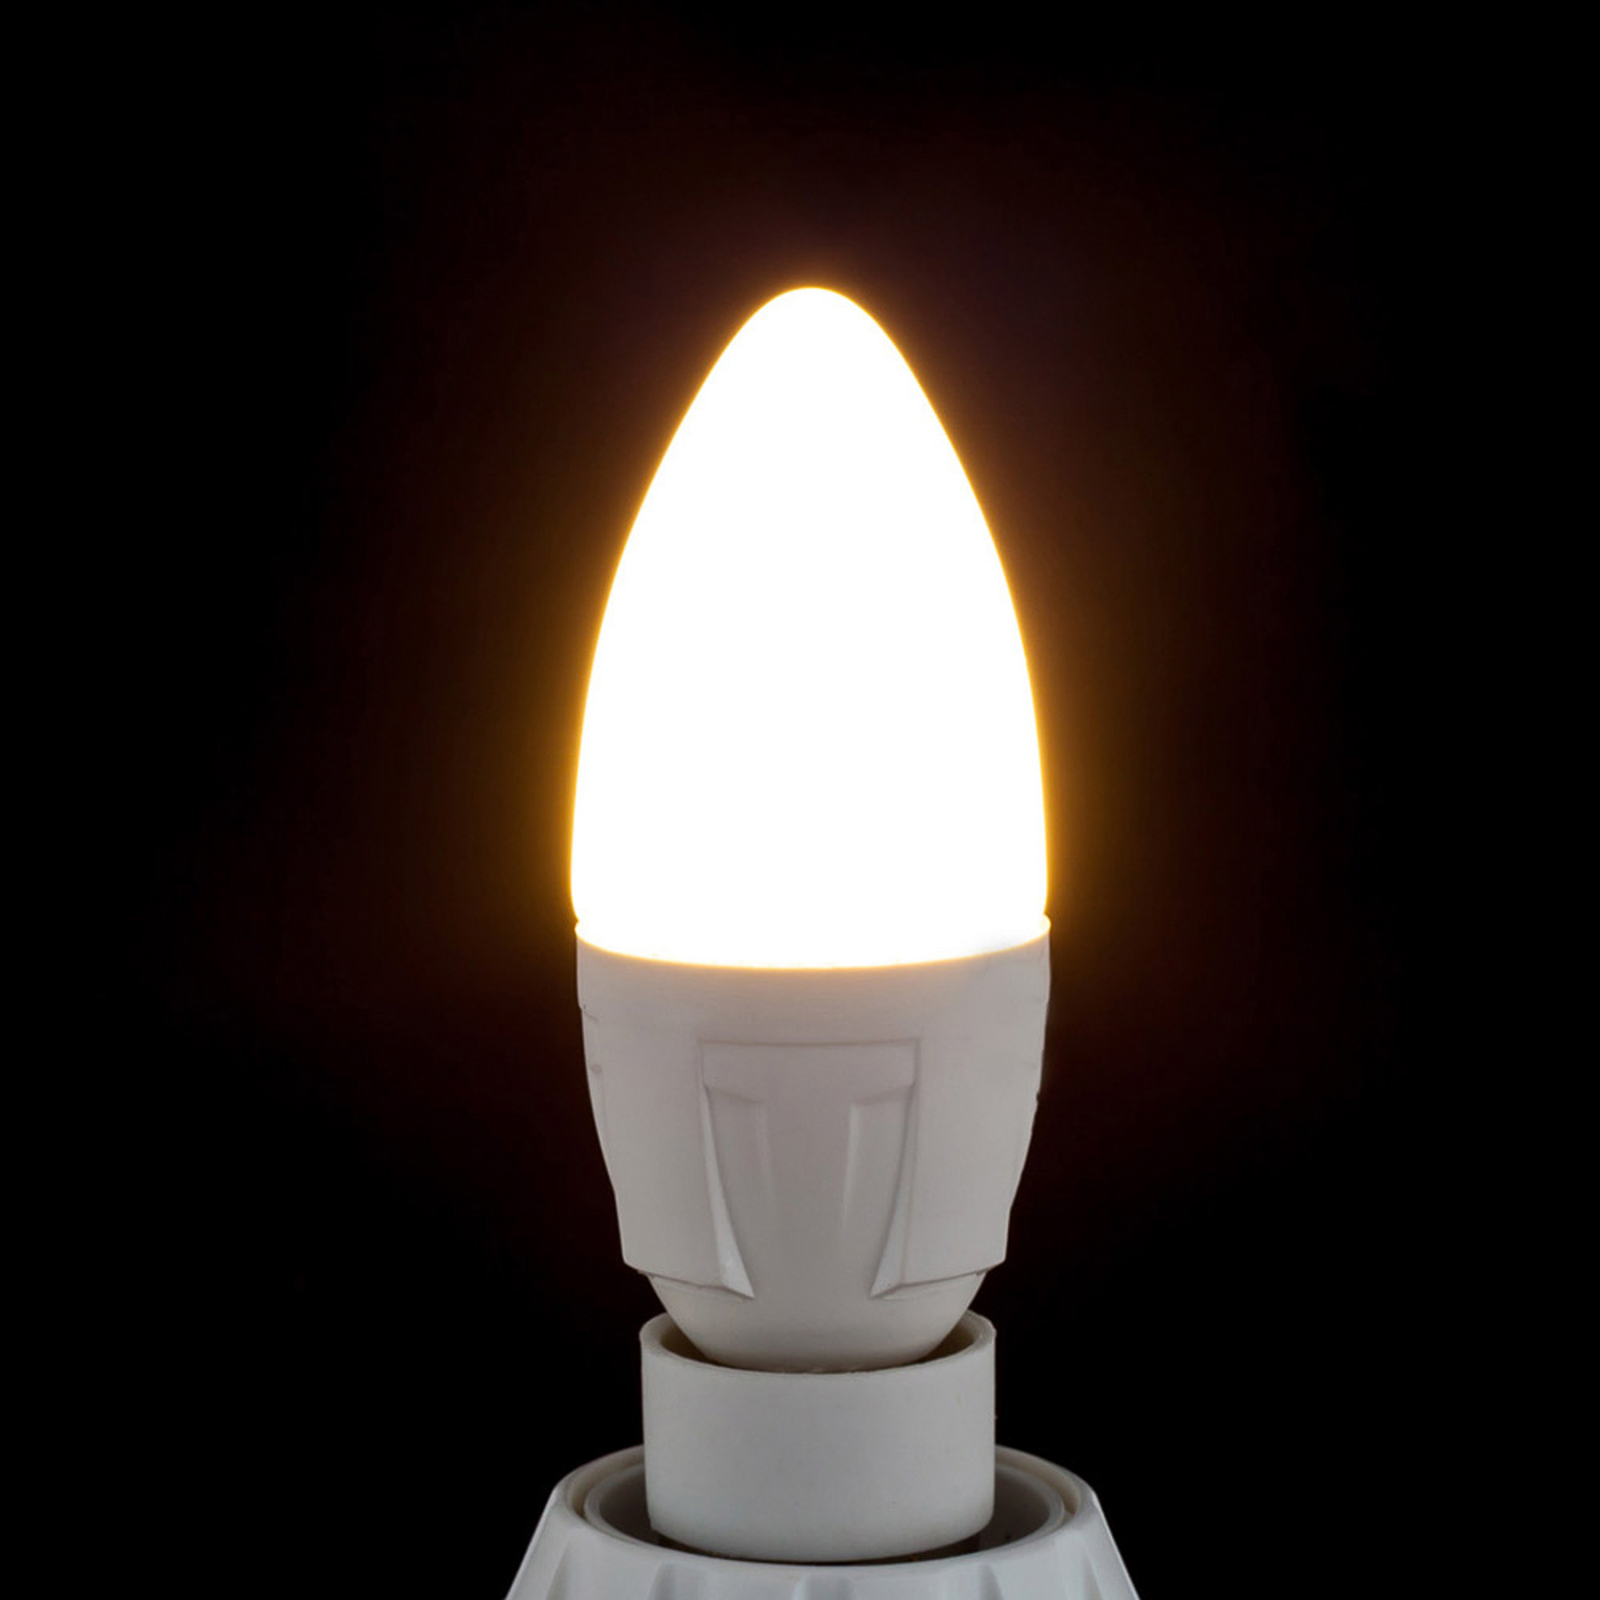 LED-Kerzenlampe E14 4,9W 830 470 Lumen, 3er-Set